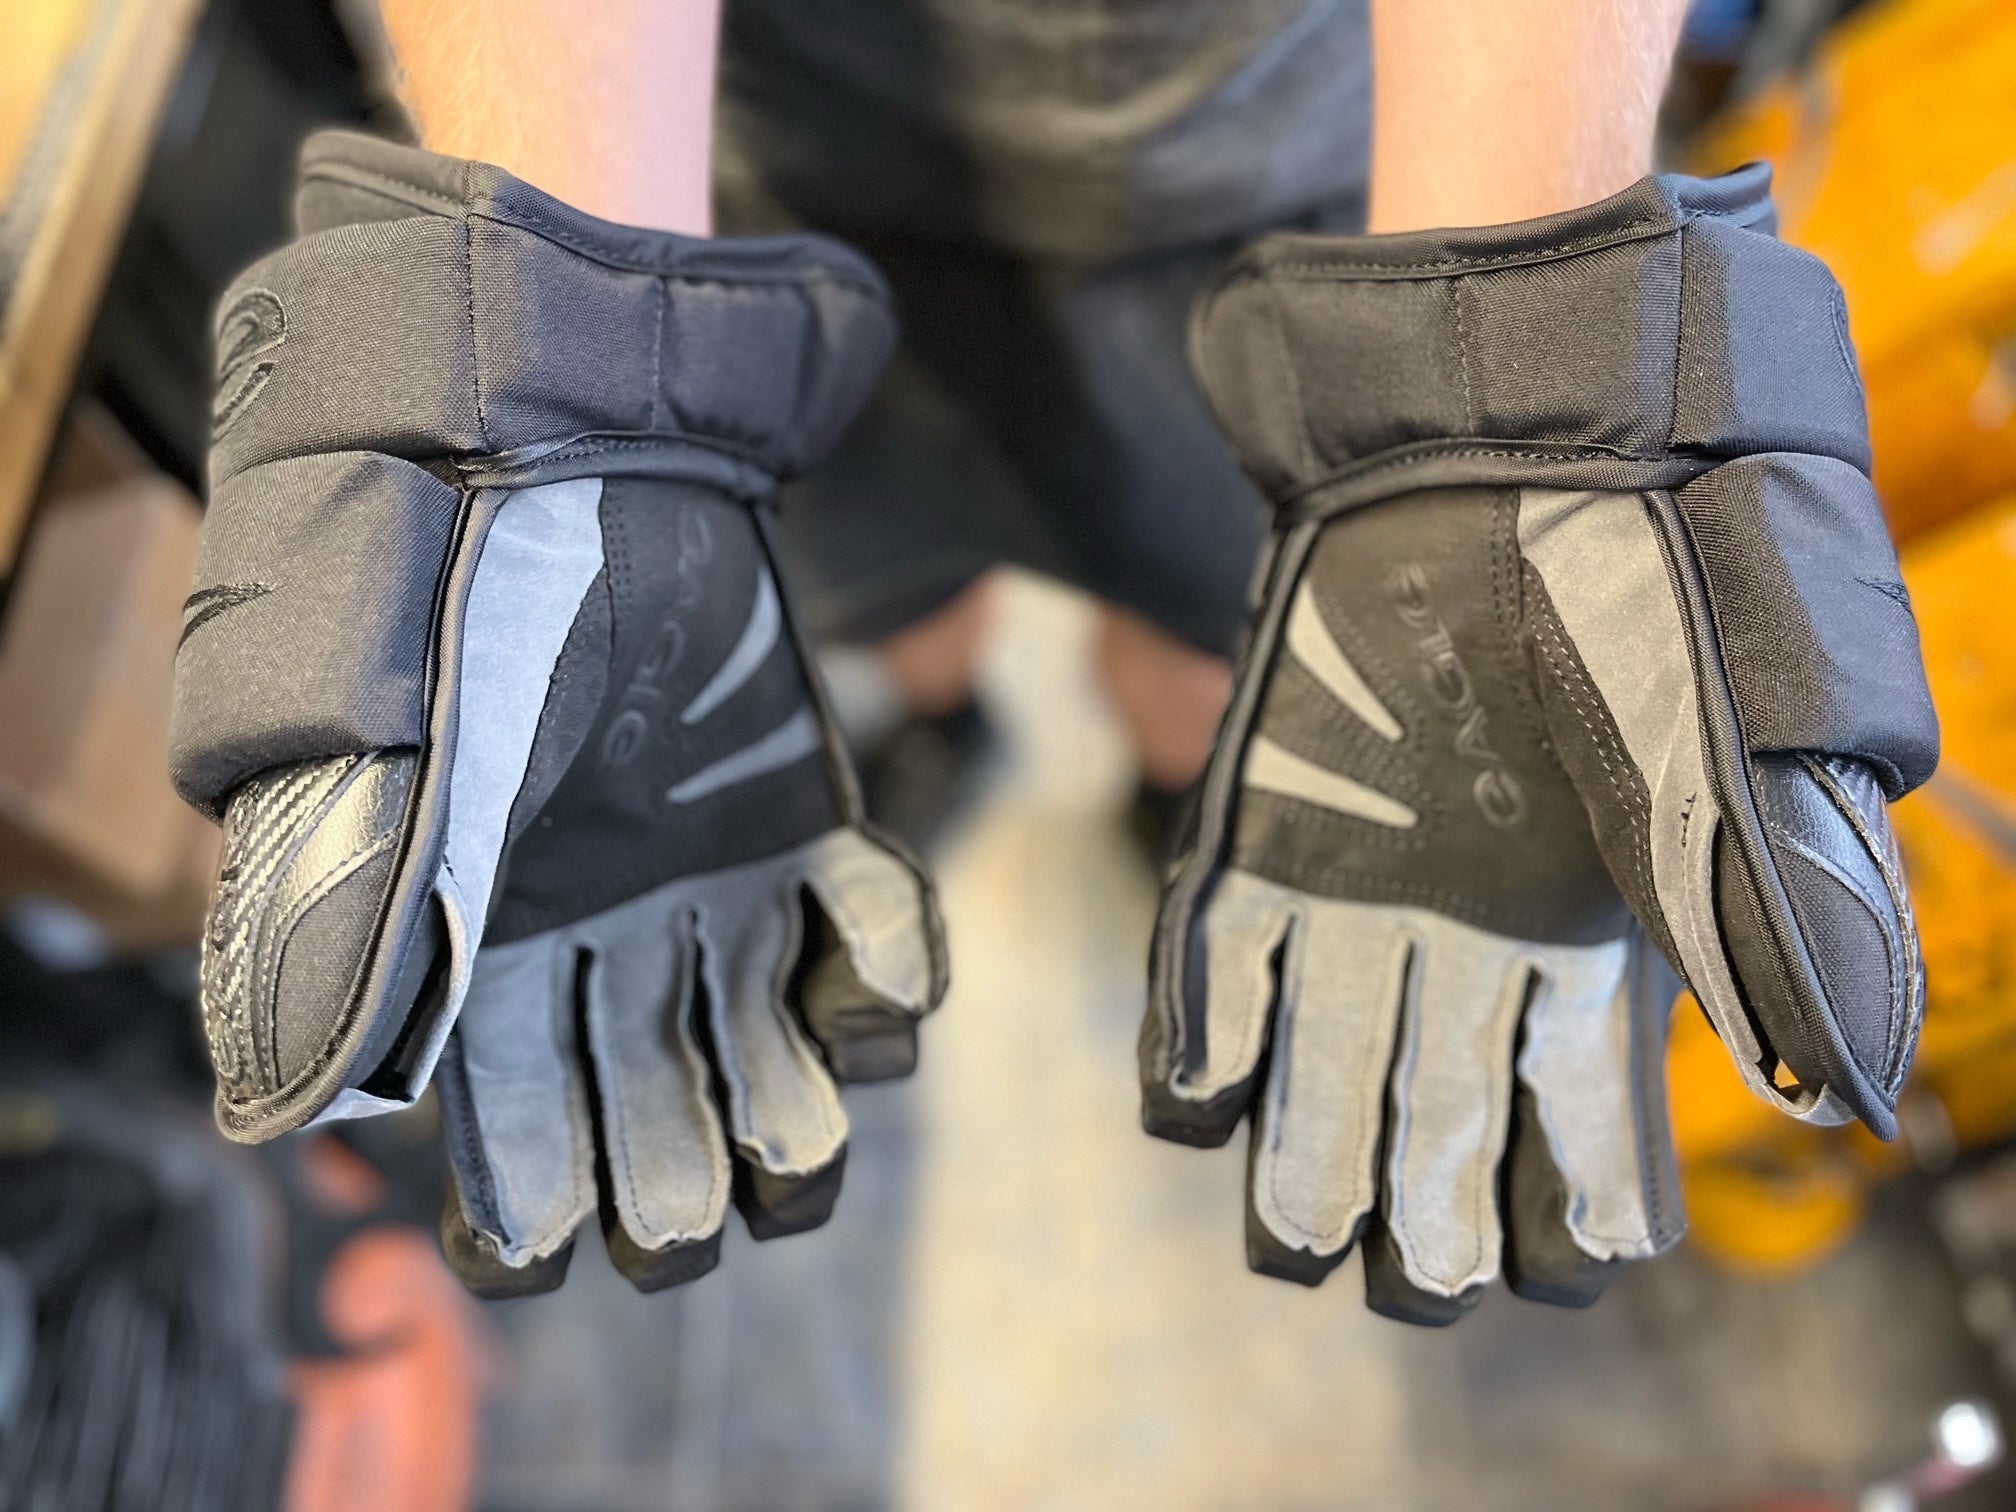 Eagle Aero Custom Gloves - Senior Made in Canada